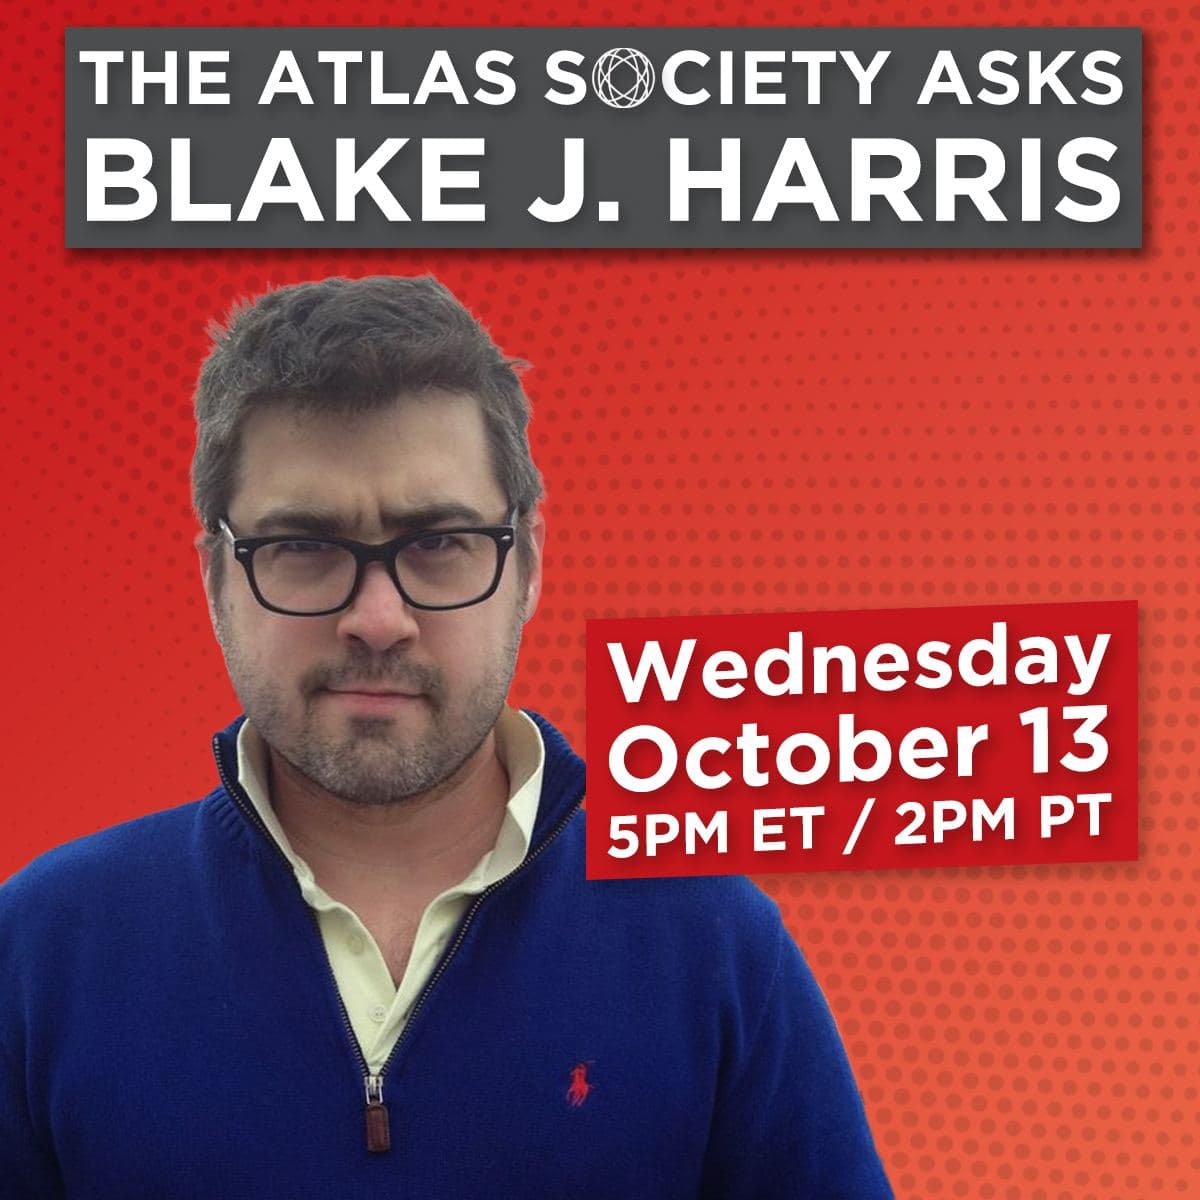 The Atlas Society Asks Blake J. Harris